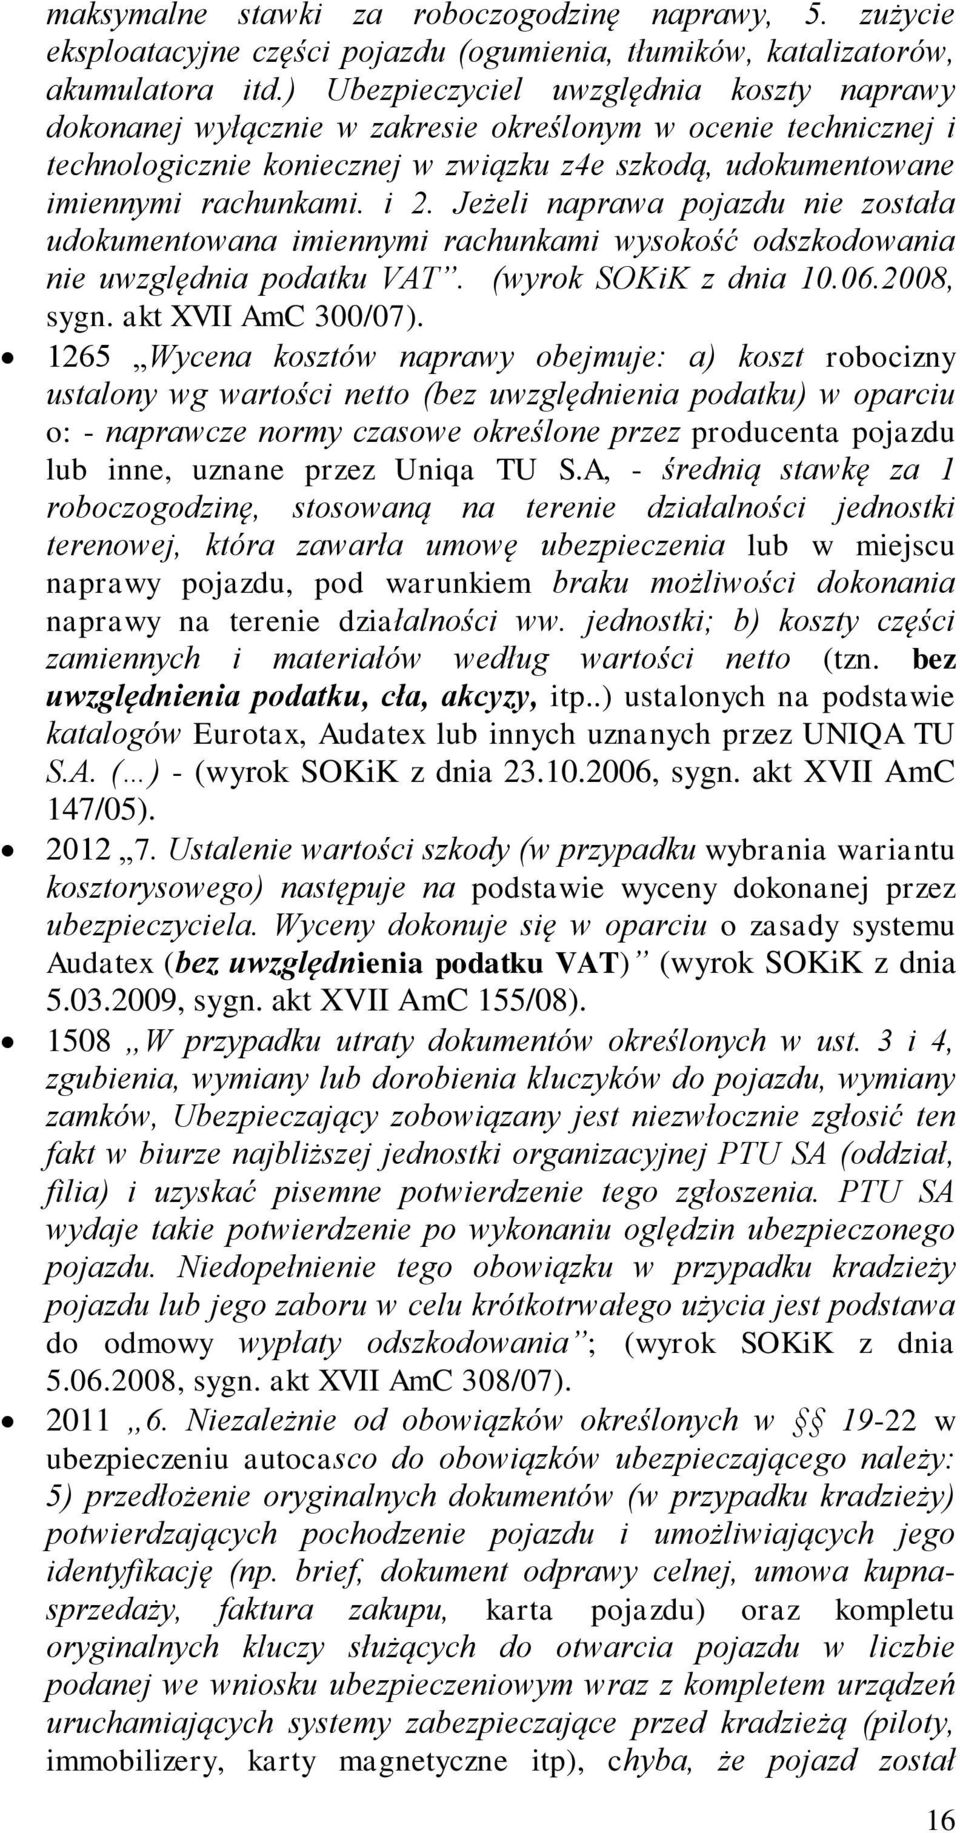 Jeżeli naprawa pojazdu nie została udokumentowana imiennymi rachunkami wysokość odszkodowania nie uwzględnia podatku VAT. (wyrok SOKiK z dnia 10.06.2008, sygn. akt XVII AmC 300/07).